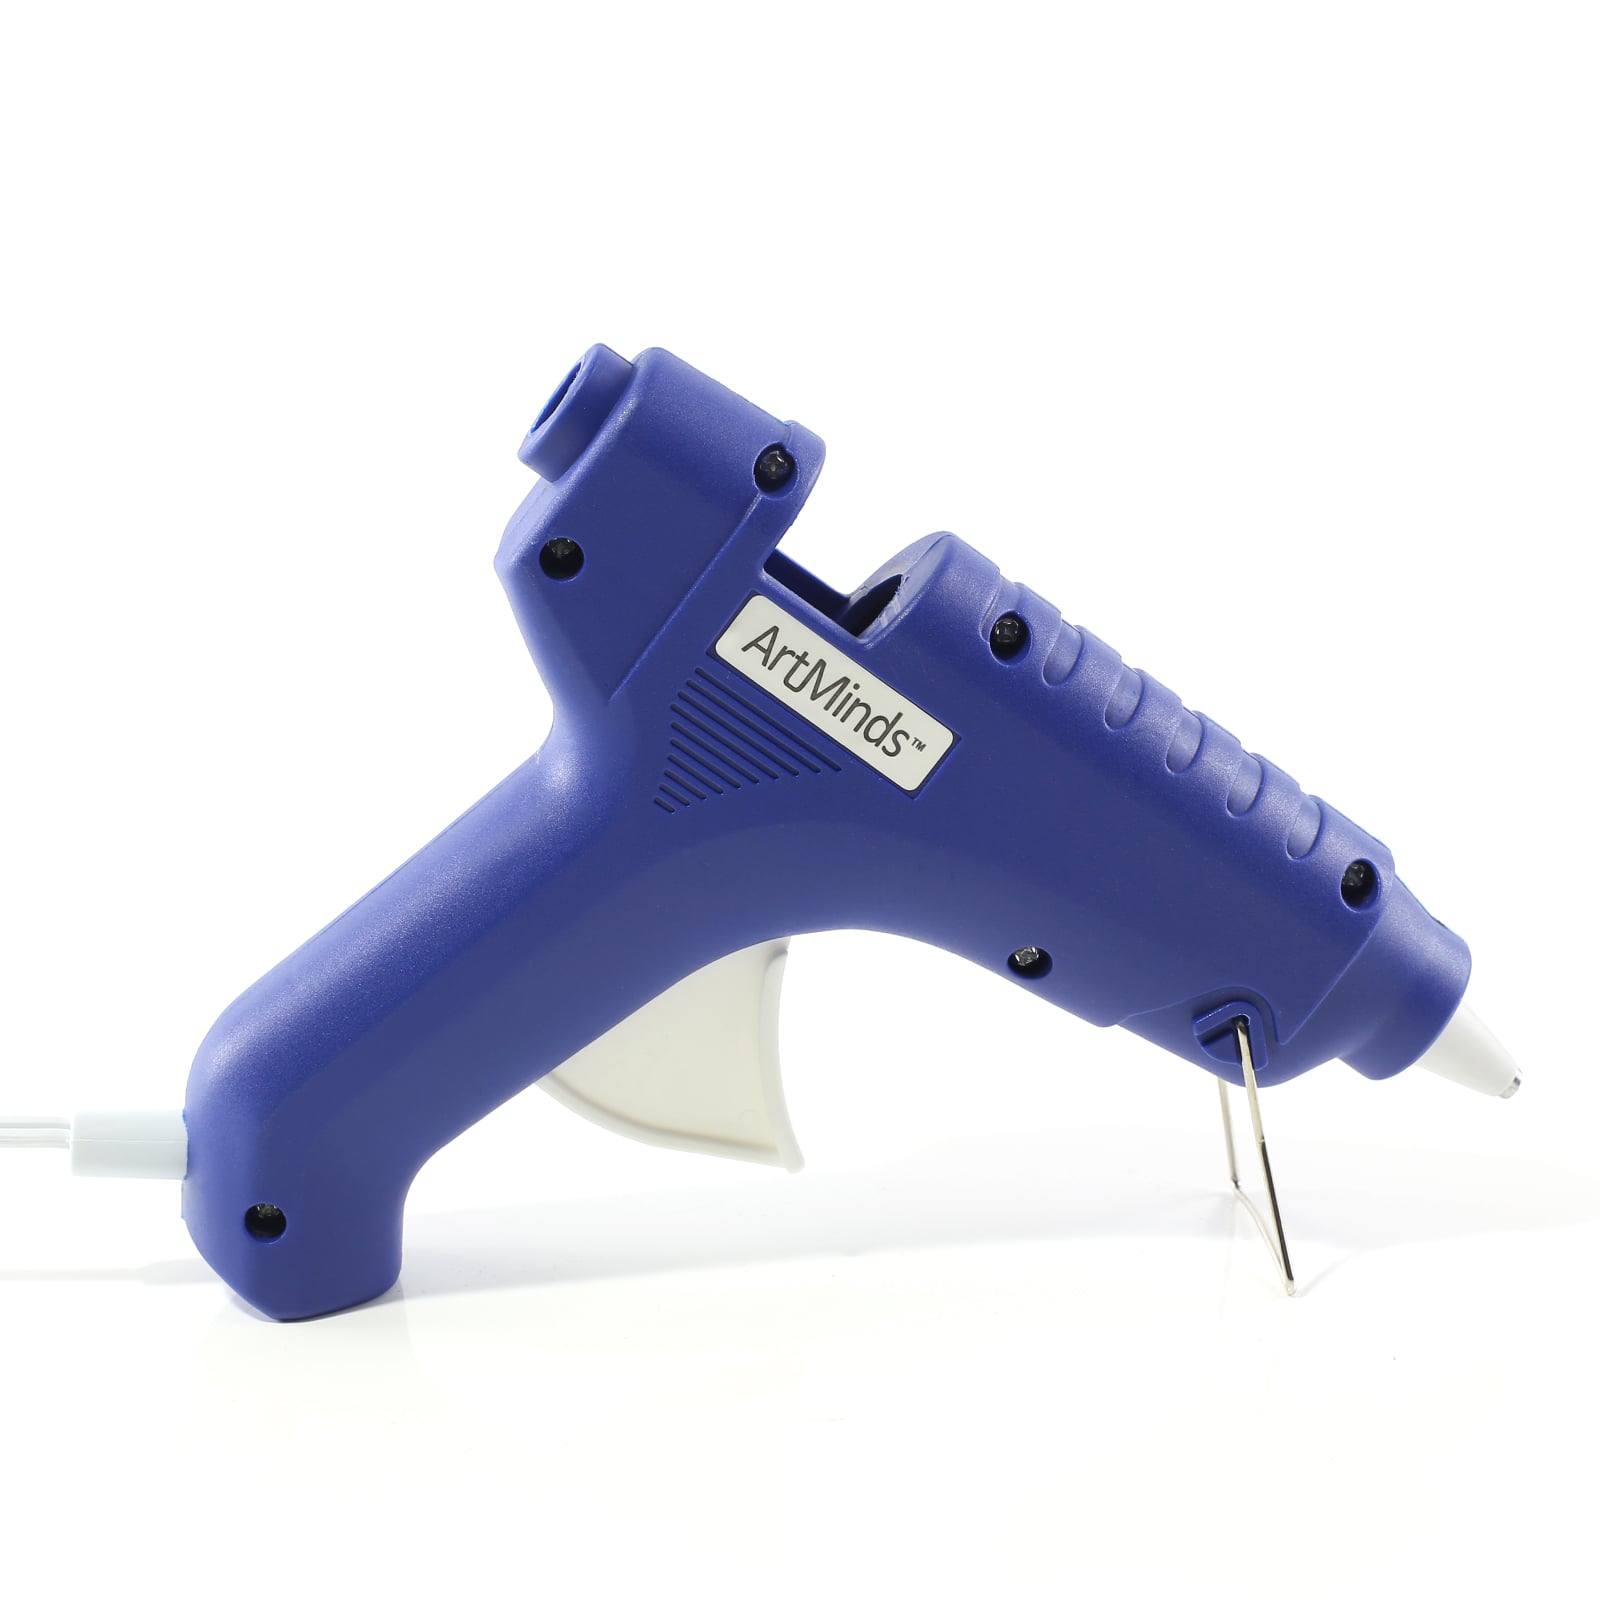 12 Pack: High Temp Mini Glue Gun by ArtMinds™ 